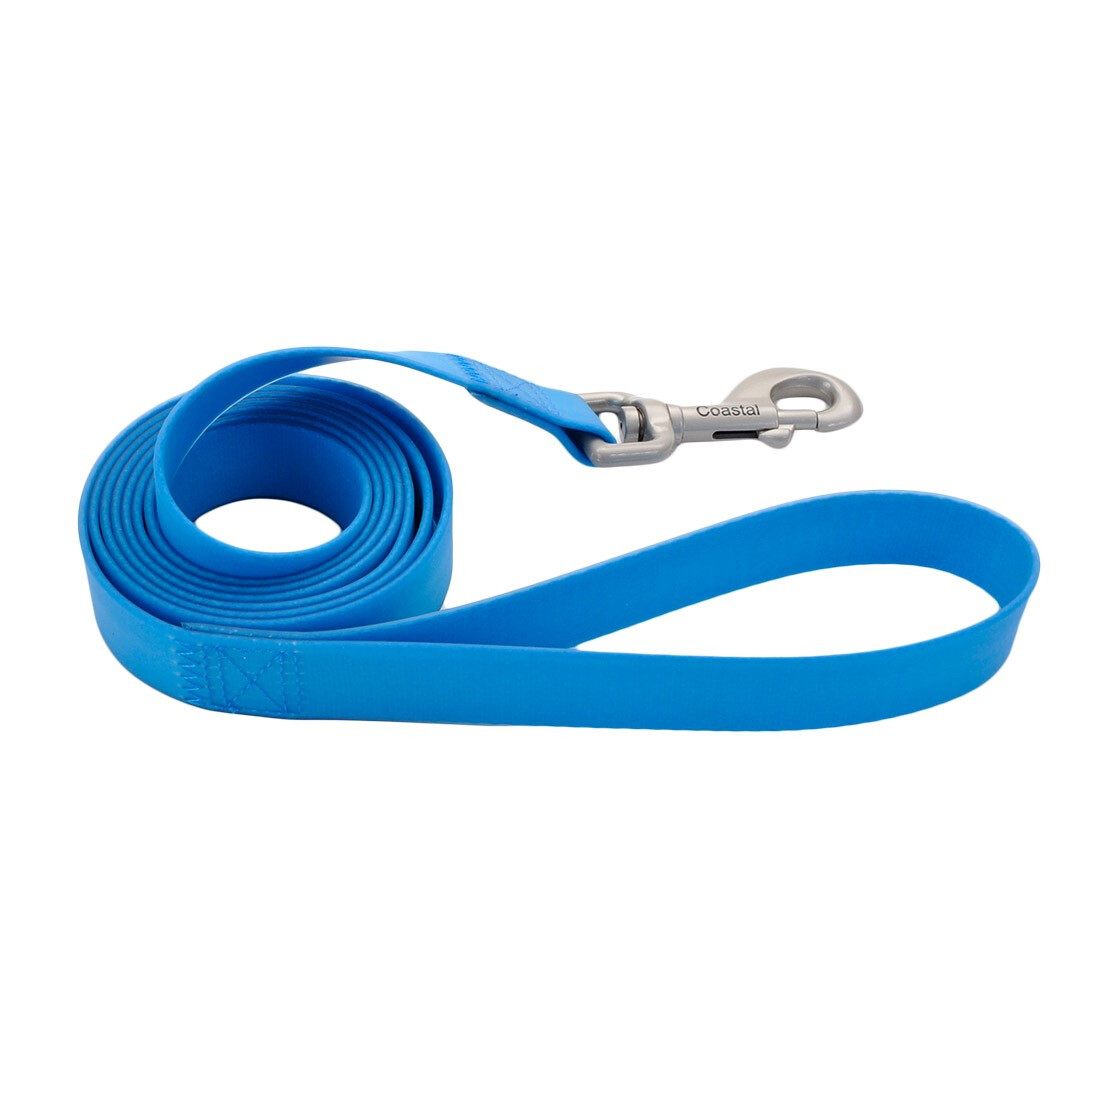 Y05840 - Laisse Imperméable Bleu pour Chiens - Coastal Pet